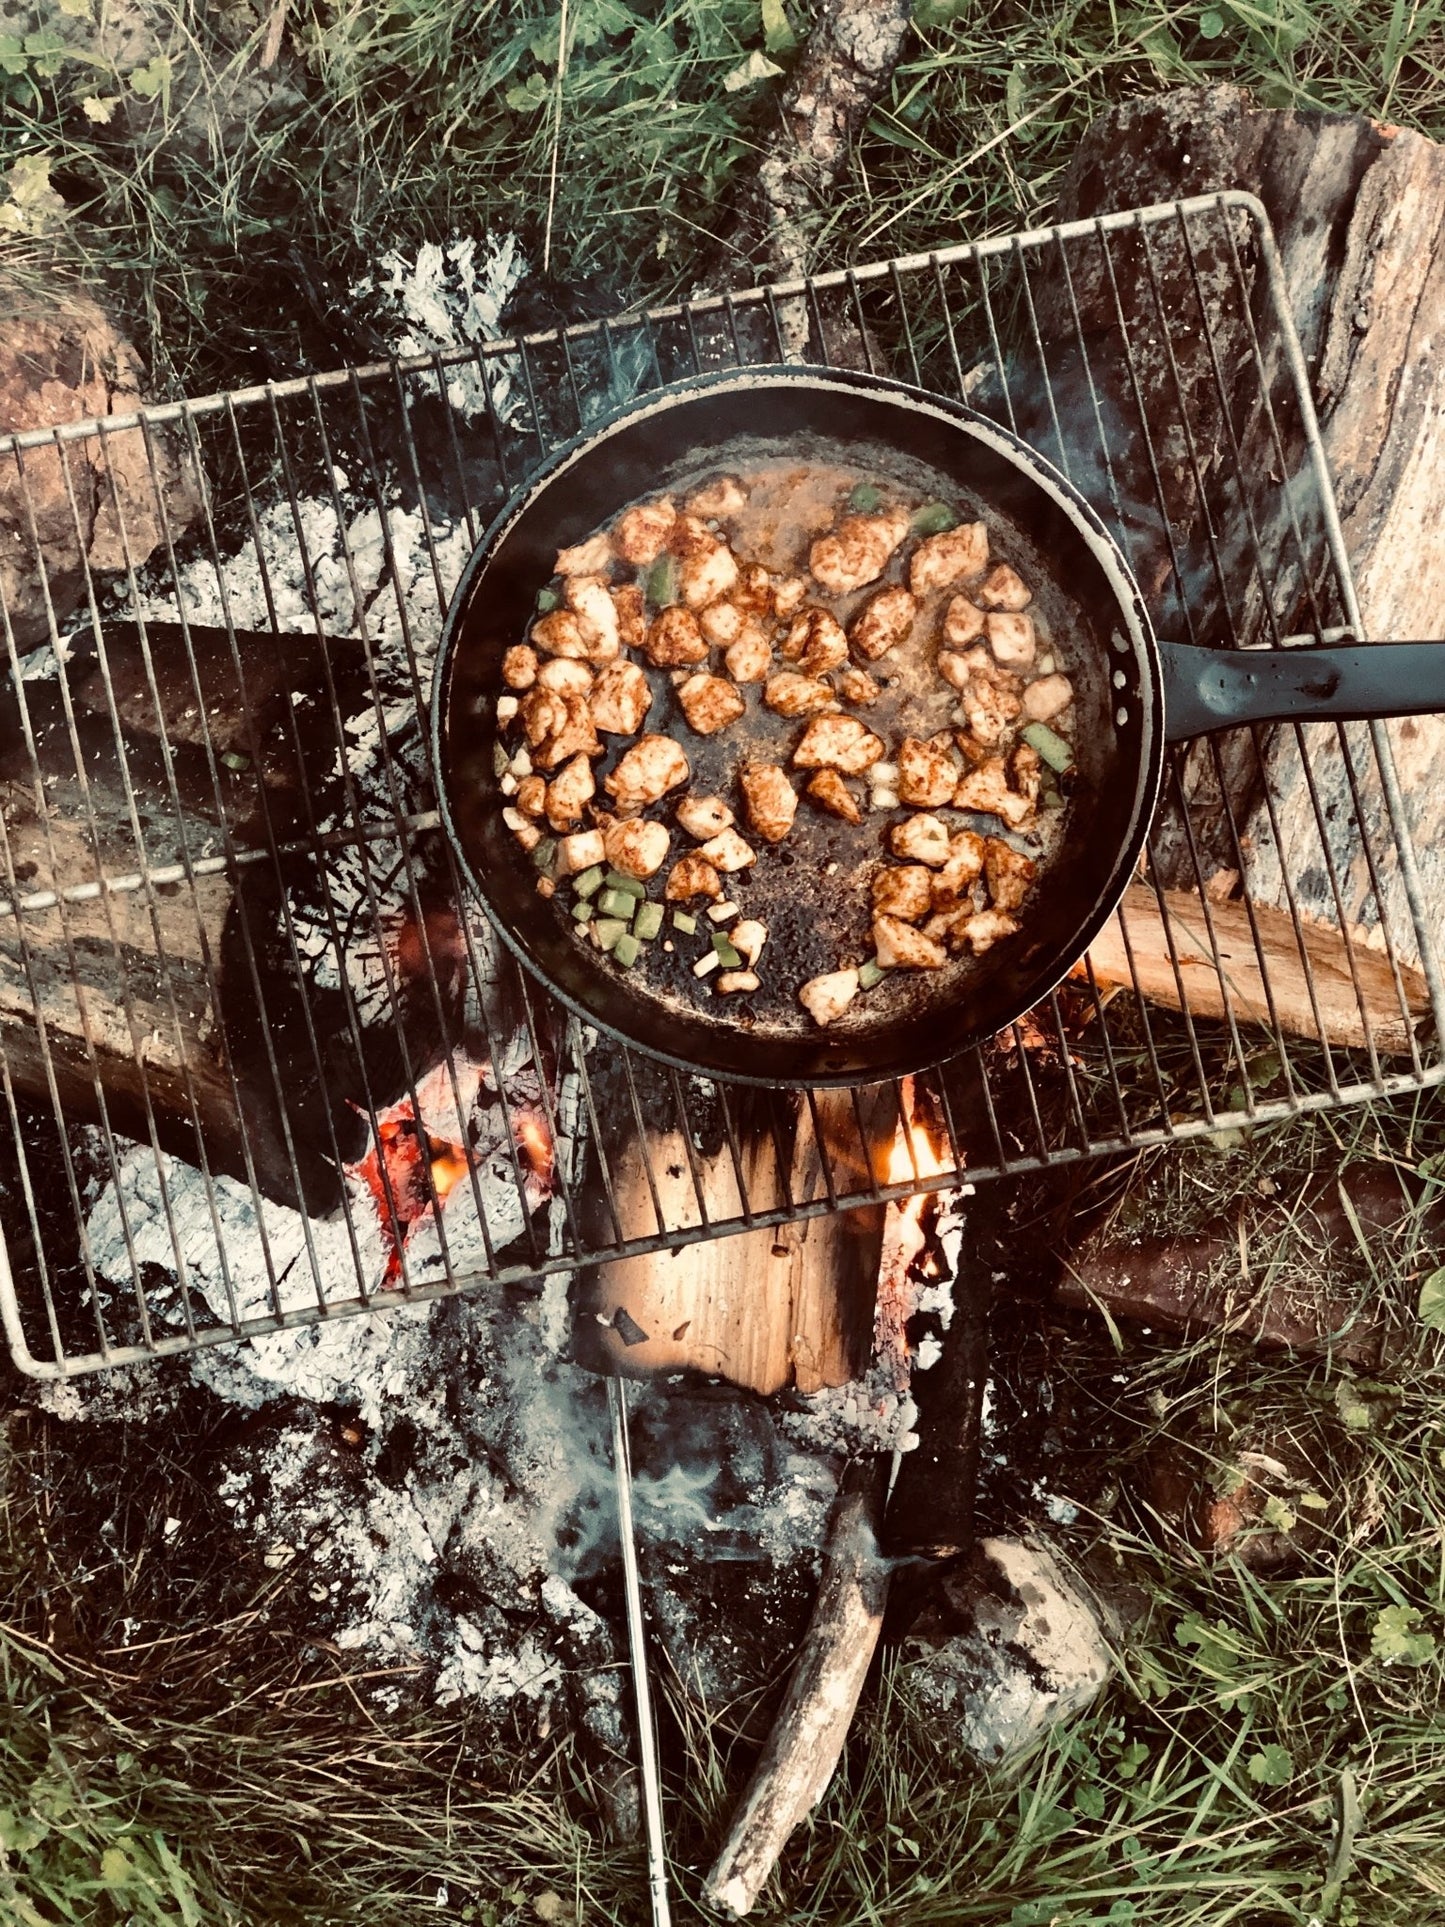 
                  
                    Colorado Campfire - The Spice Guy
                  
                